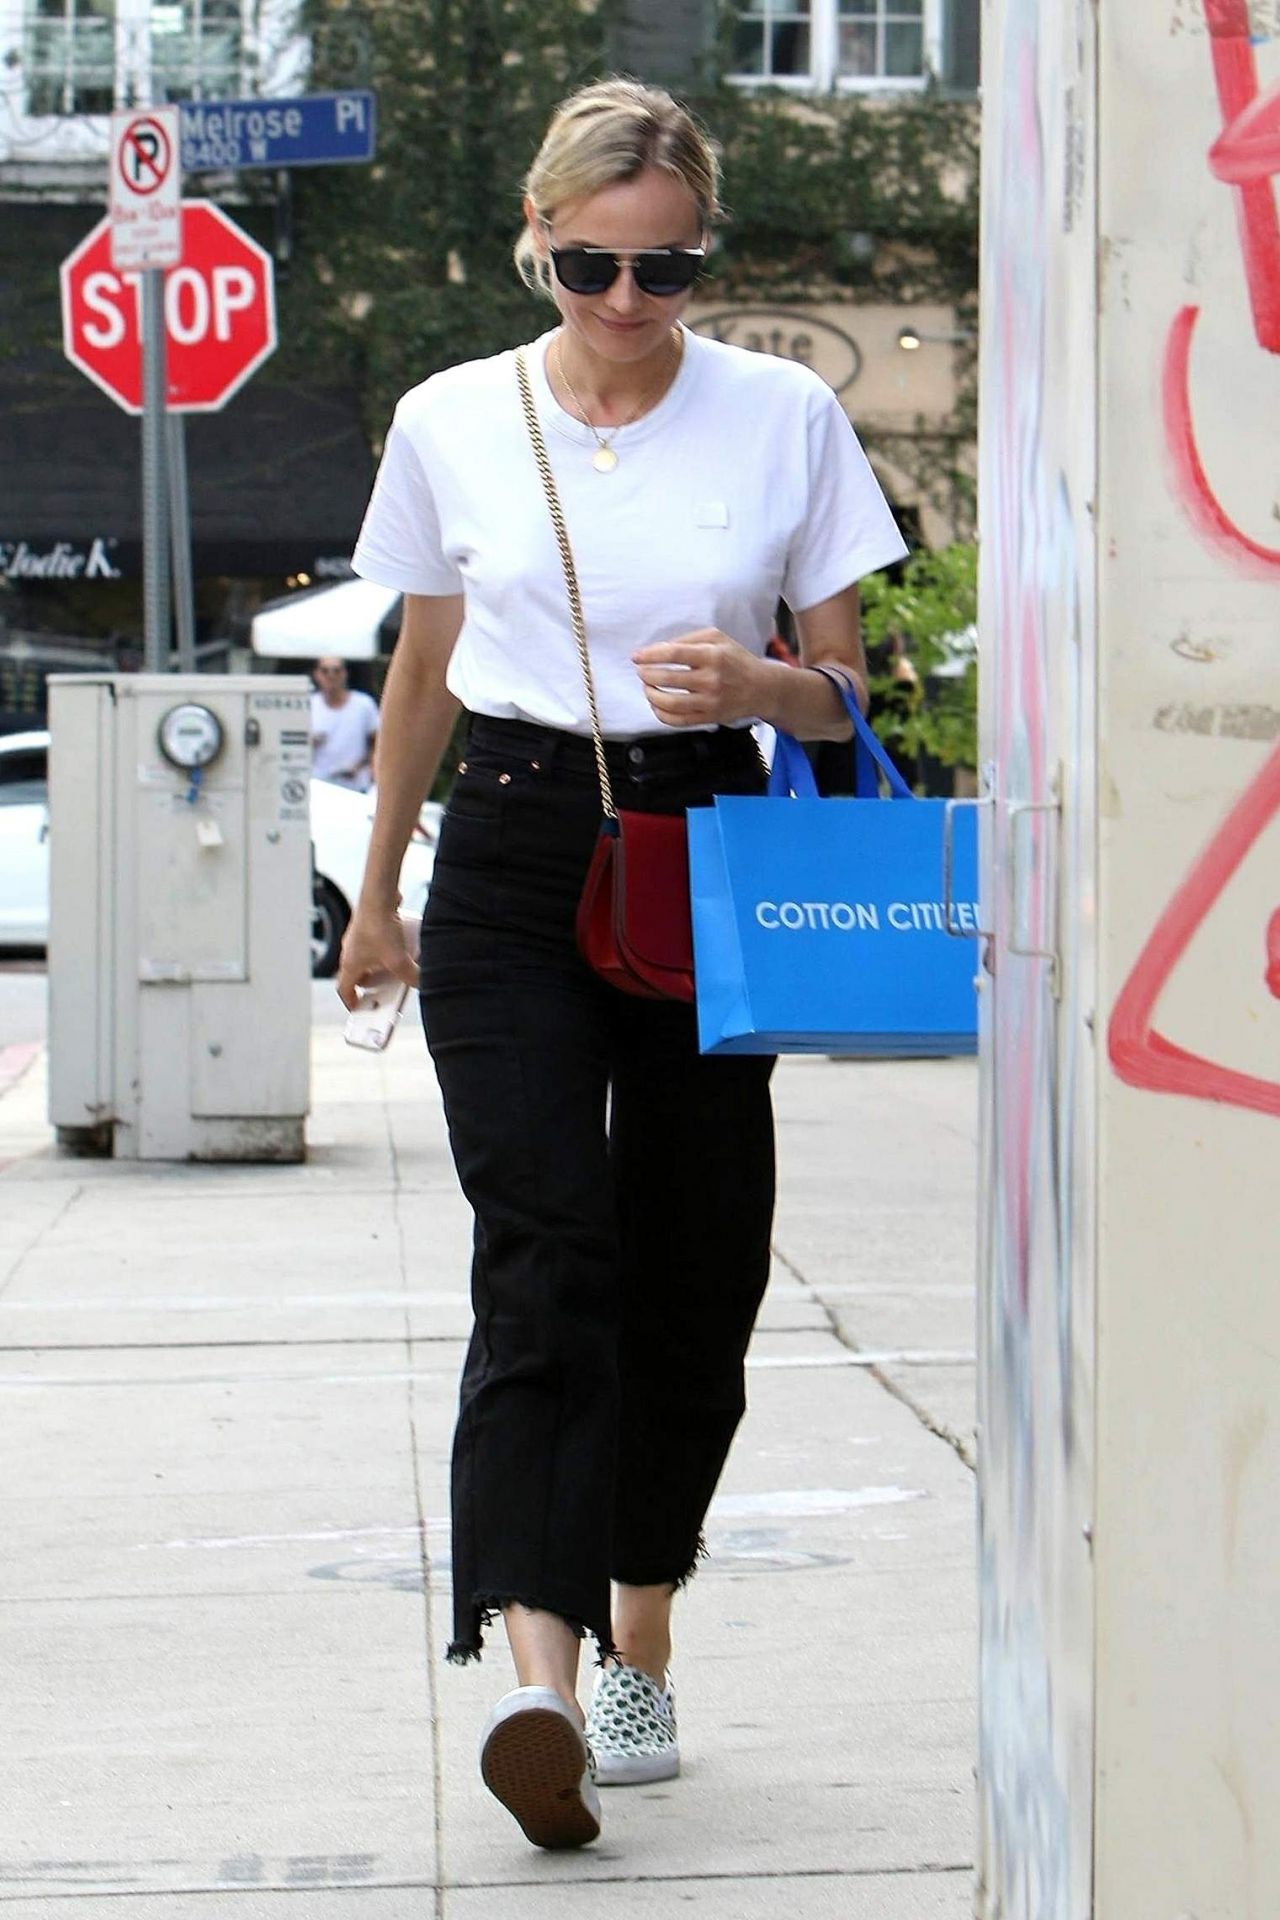 Diane Kruger - Shops at Cotton Citizen on Melrose Place in LA 11/01 ...